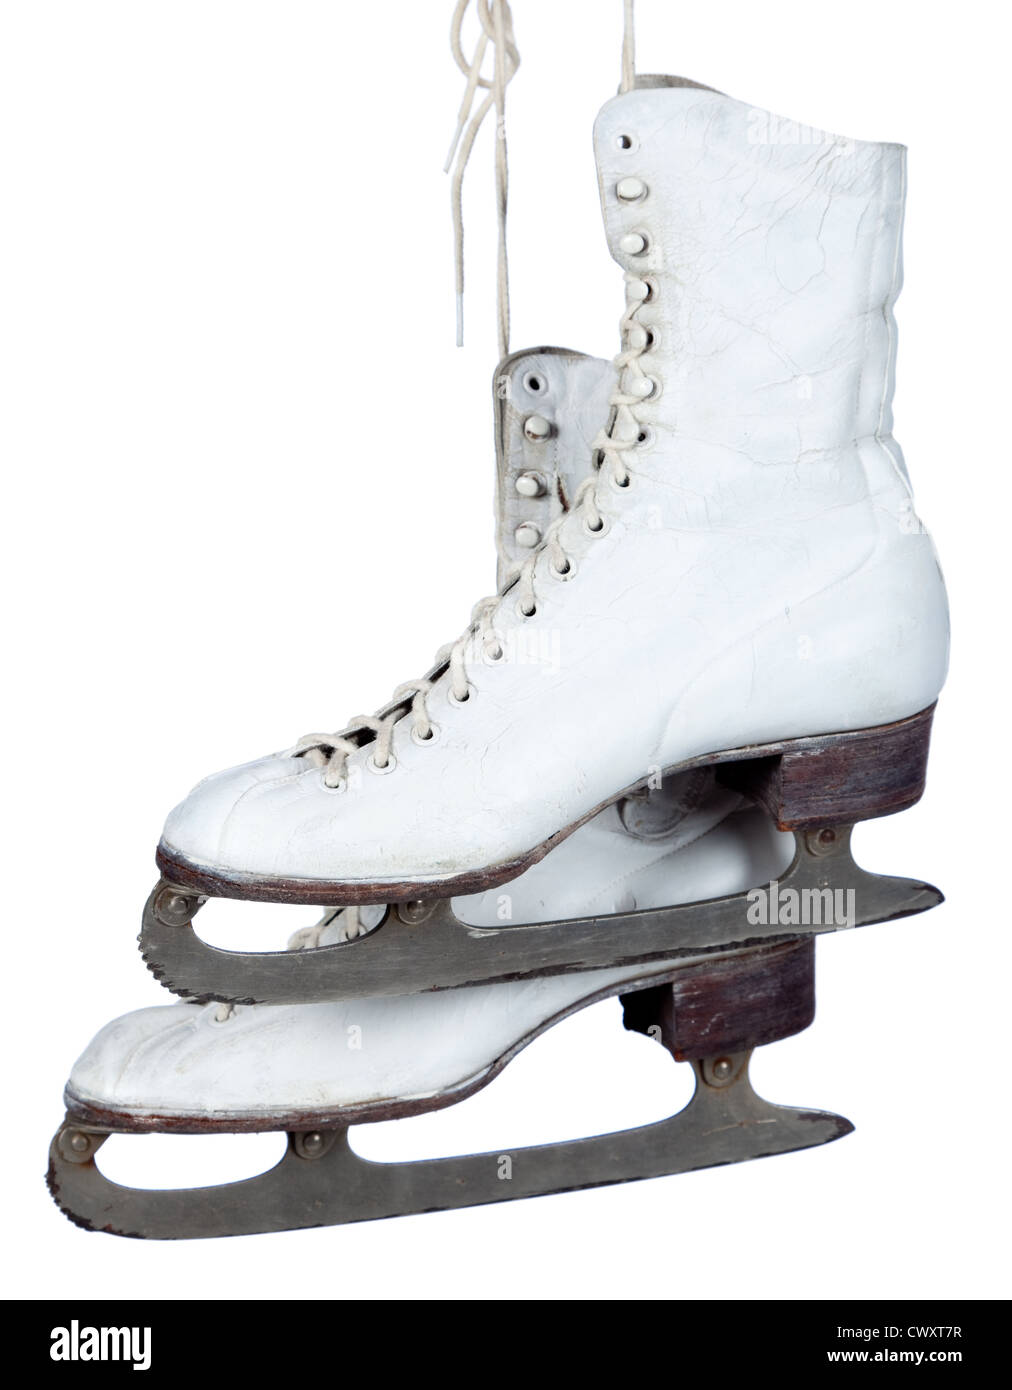 A pair of white ice skates on a white background Stock Photo